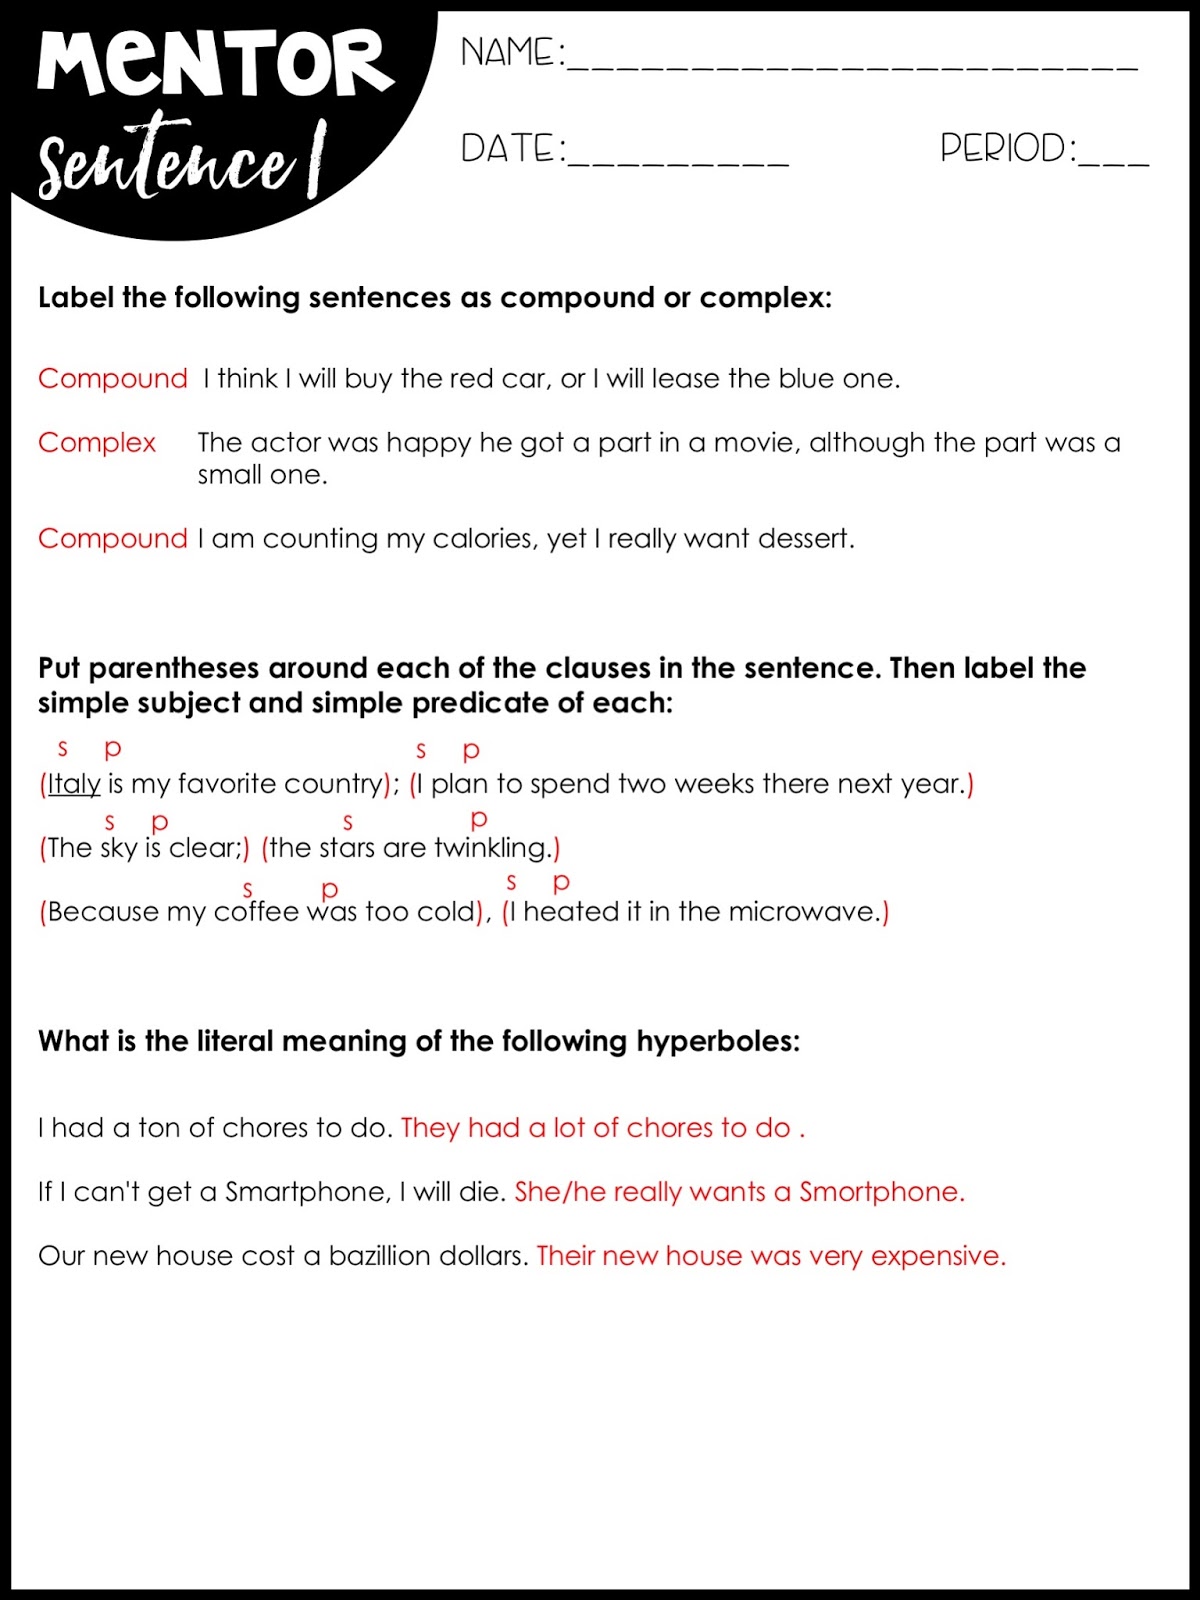 Mentor Sentences 2 Worksheets